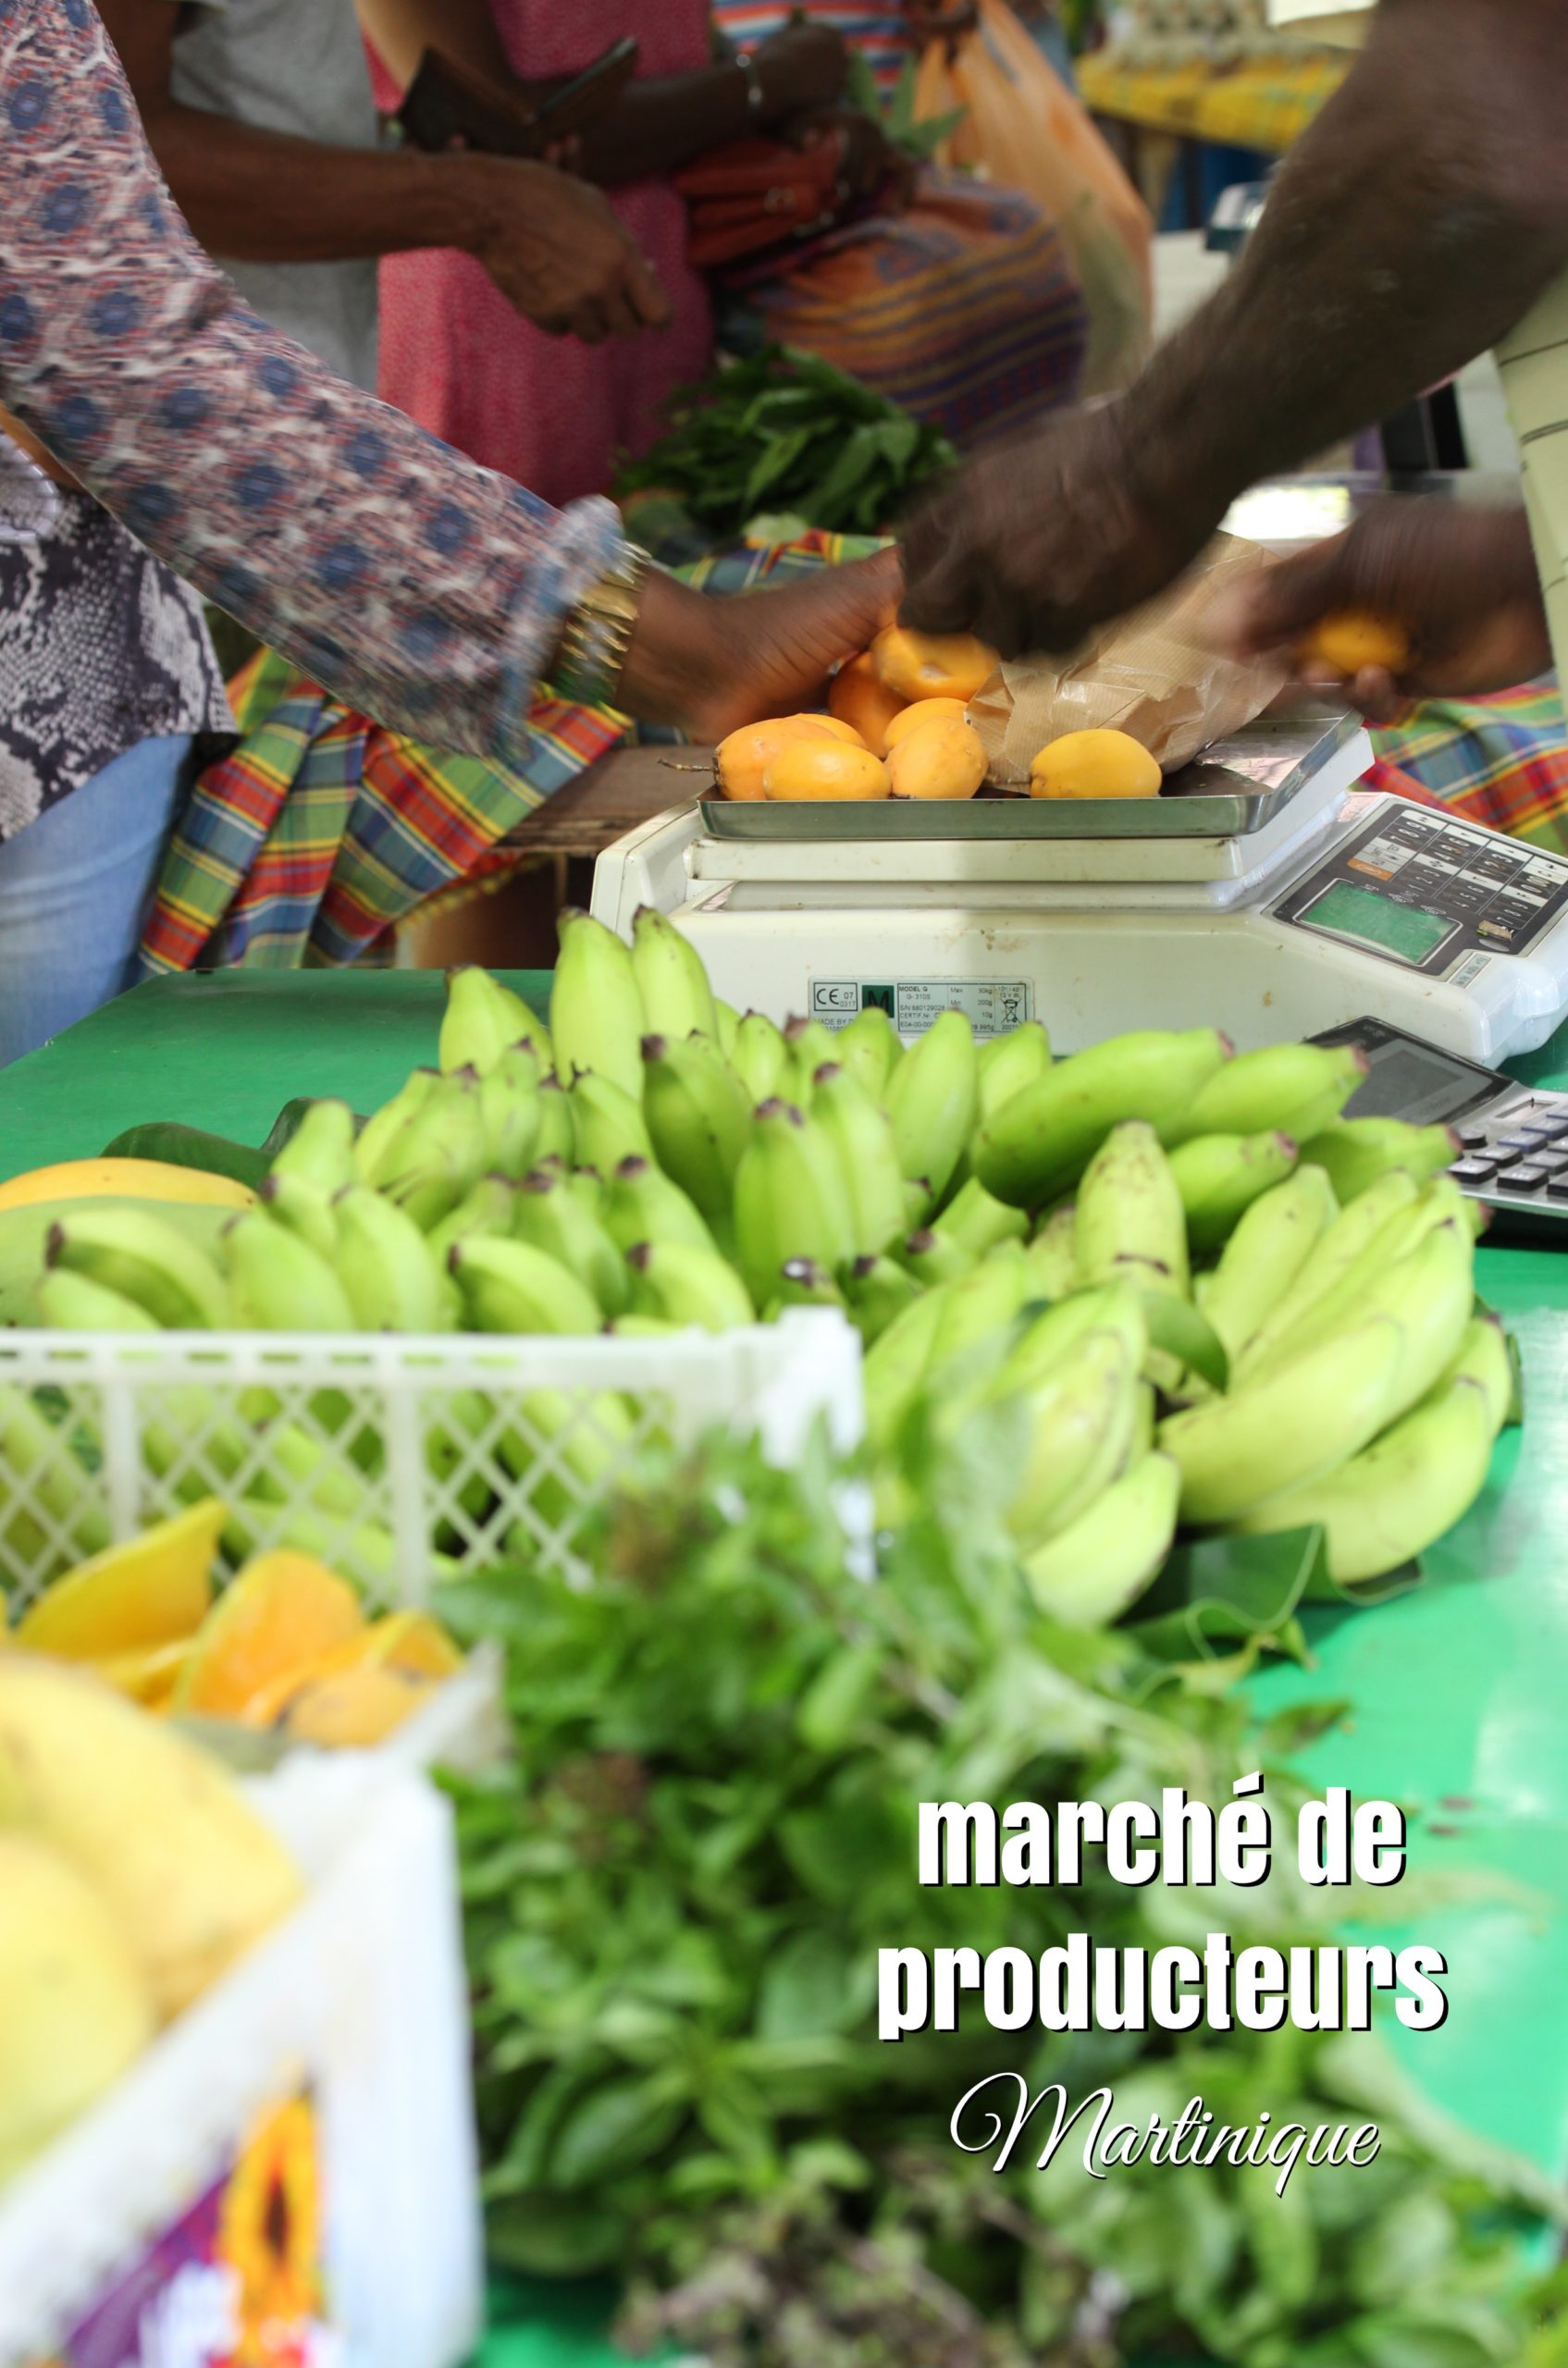 marché de producteurs Orga péyi Martinique bien manger pas cher